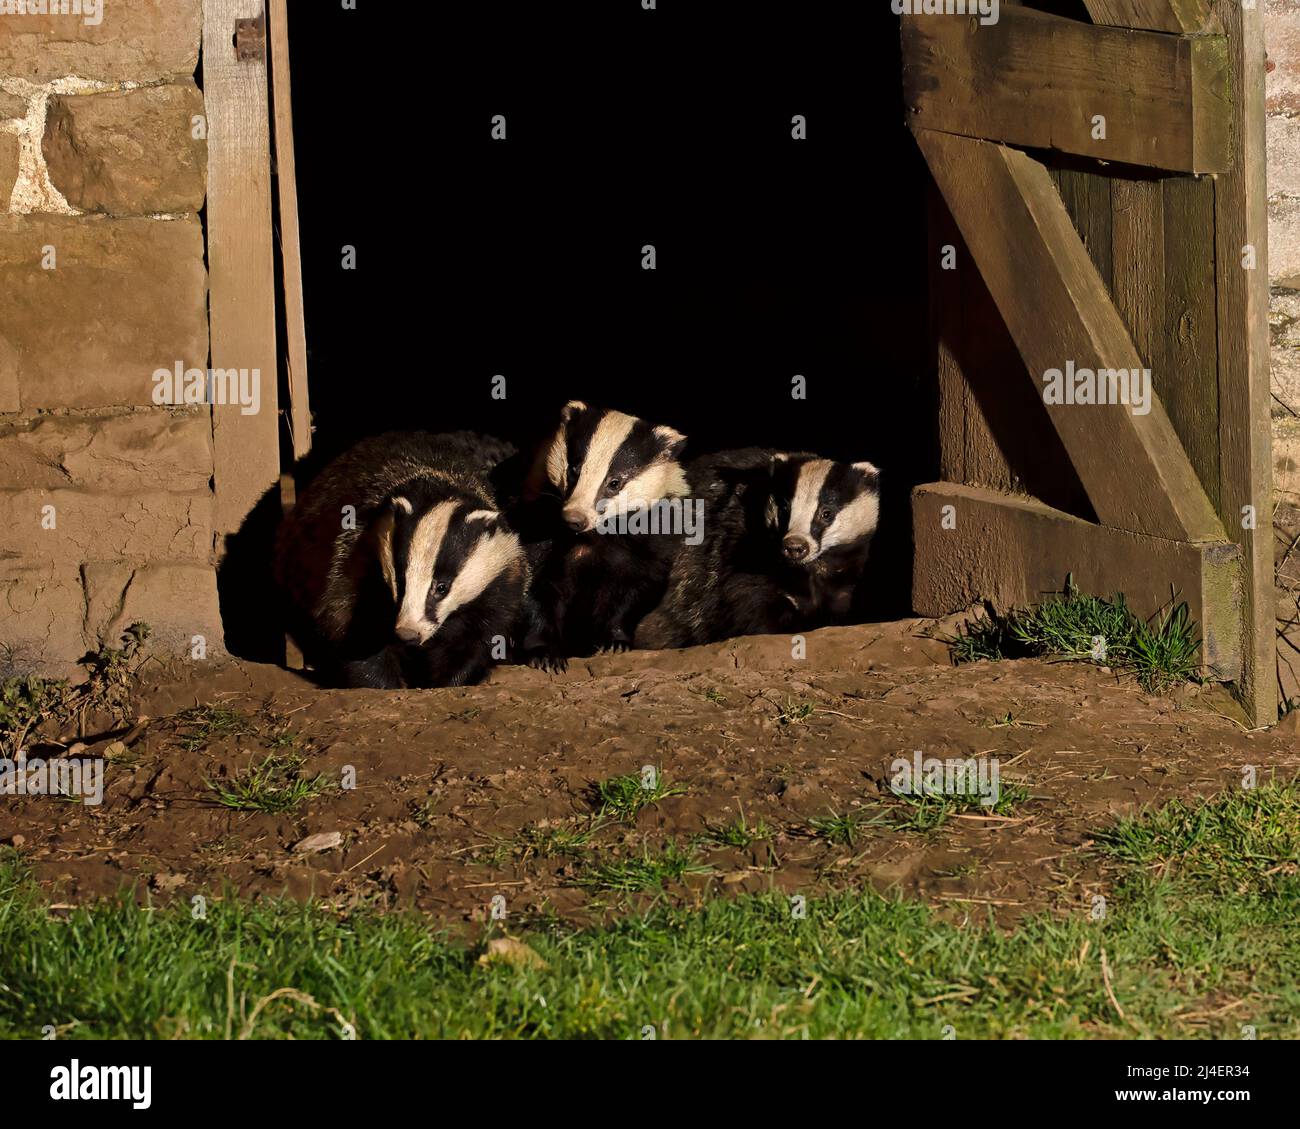 Badger européen, Meles meles. Une famille de blaireaux, cete, a un nid, un terreau, à l'intérieur d'une grange abandonnée à Wensleydale, dans le parc national de Yorkshire Dales. Trois b Banque D'Images